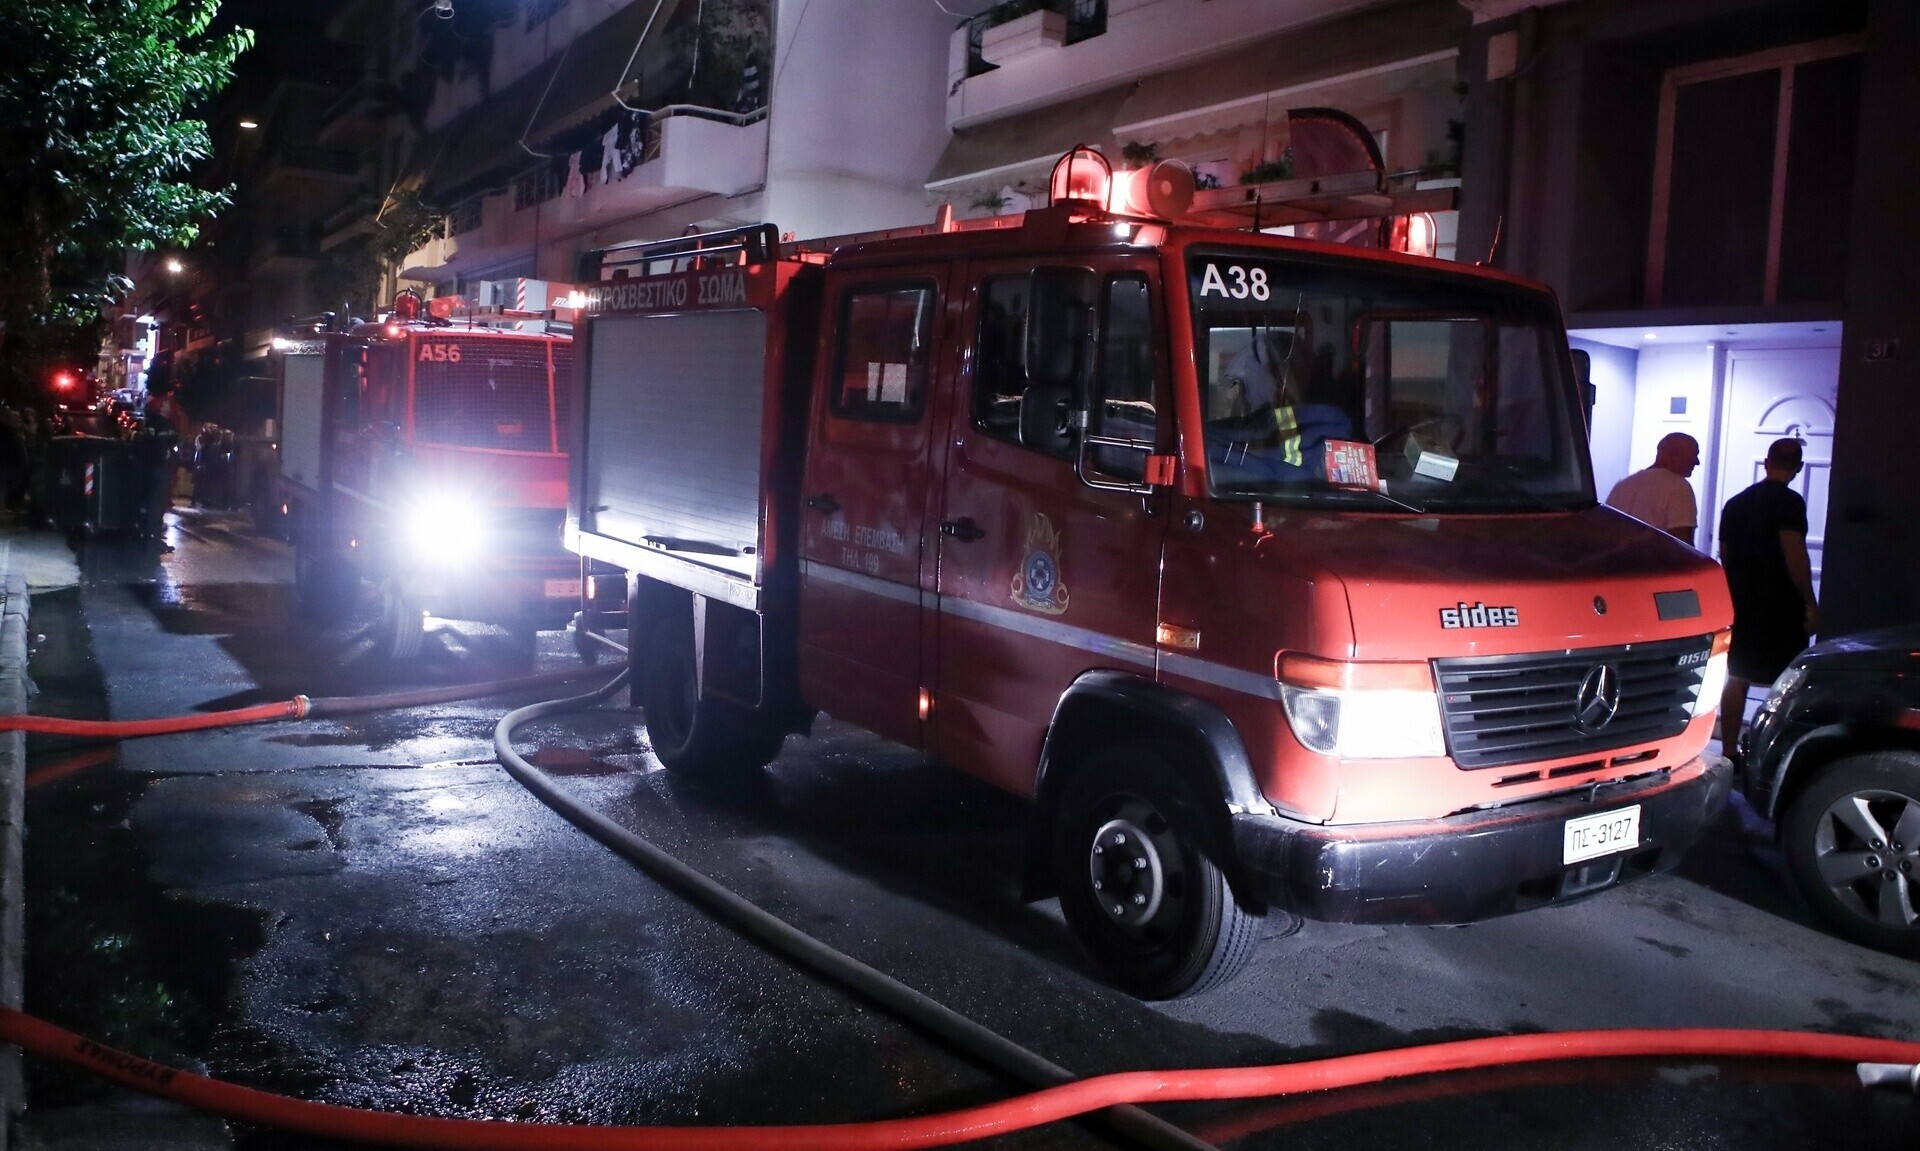 Παγκράτι: Πυρκαγιά σε διαμέρισμα - Επί τόπου τέσσερα οχήματα της Πυροσβεστικής